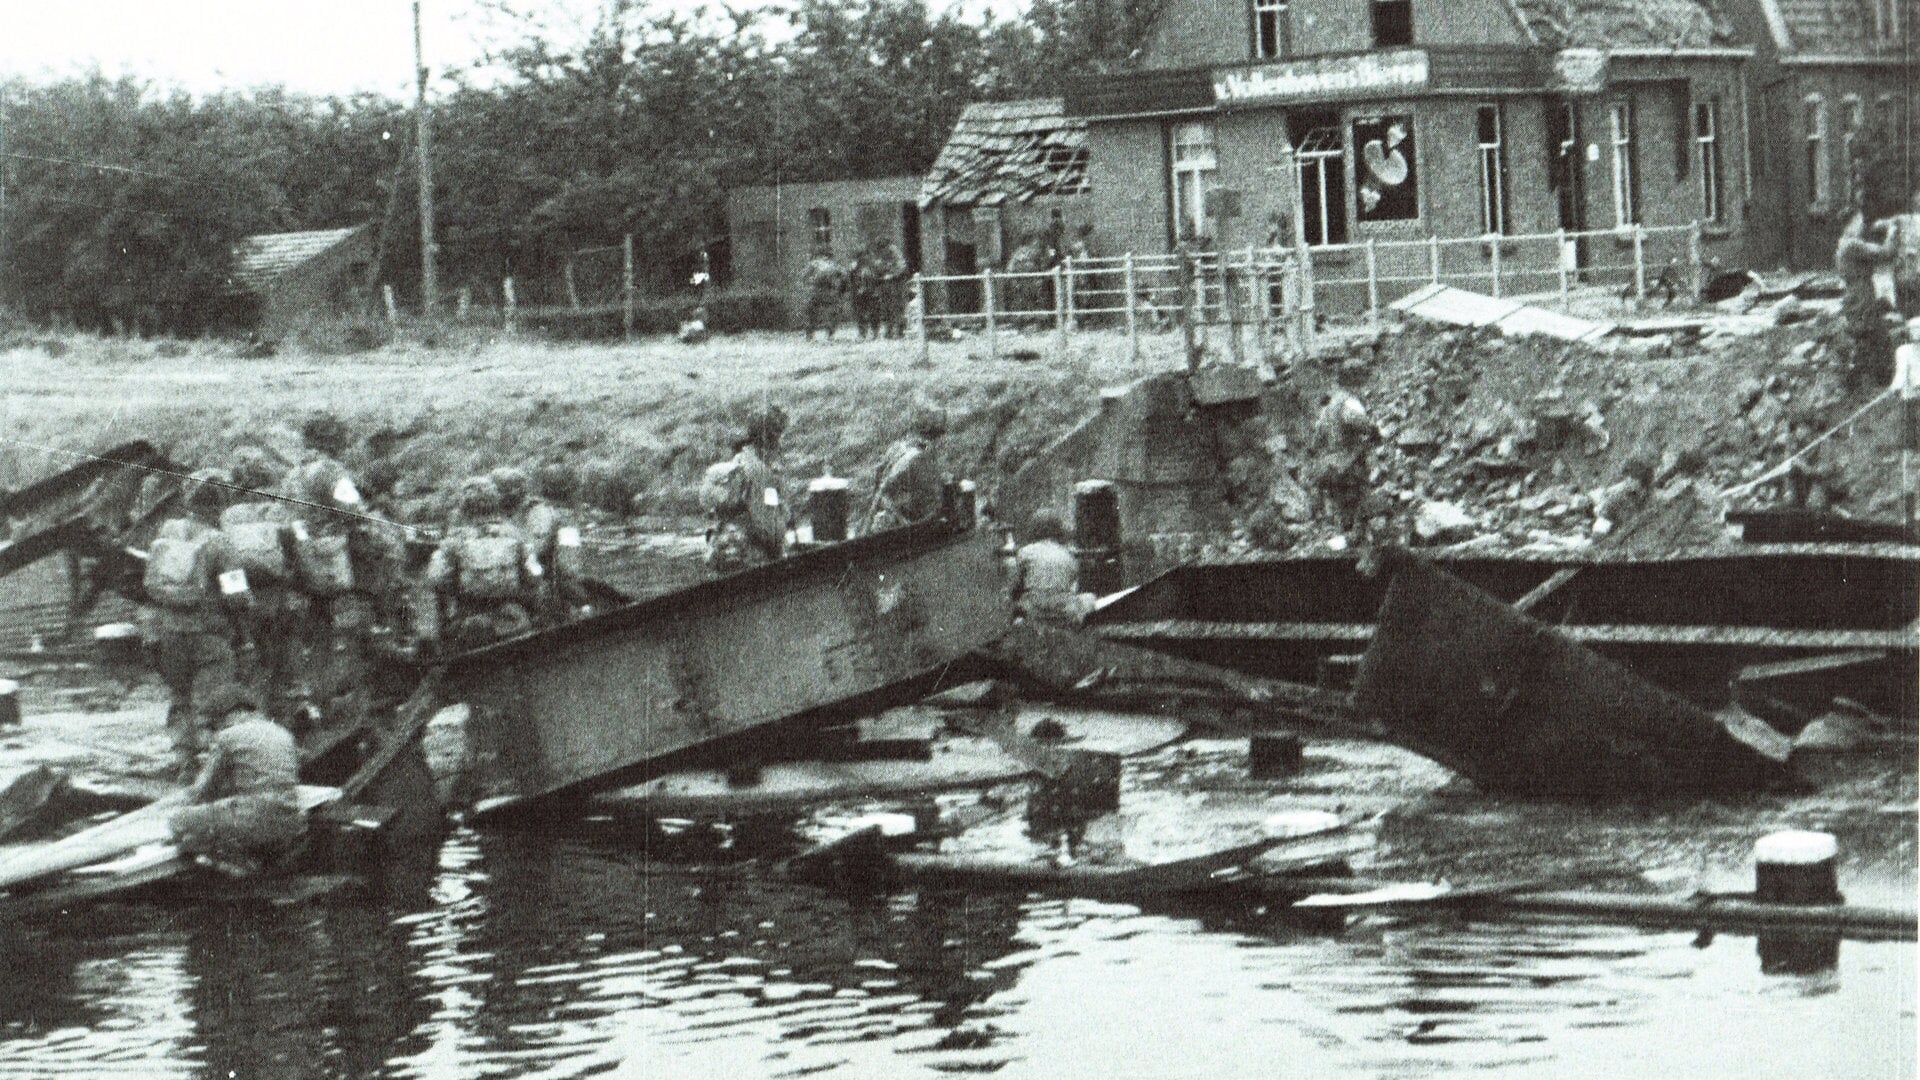 Op 17 september 1944 werd de Sonse brug door de Duitsers opgeblazen. Tijdverlies voor de geallieerden, die op weg waren naar Arnhem